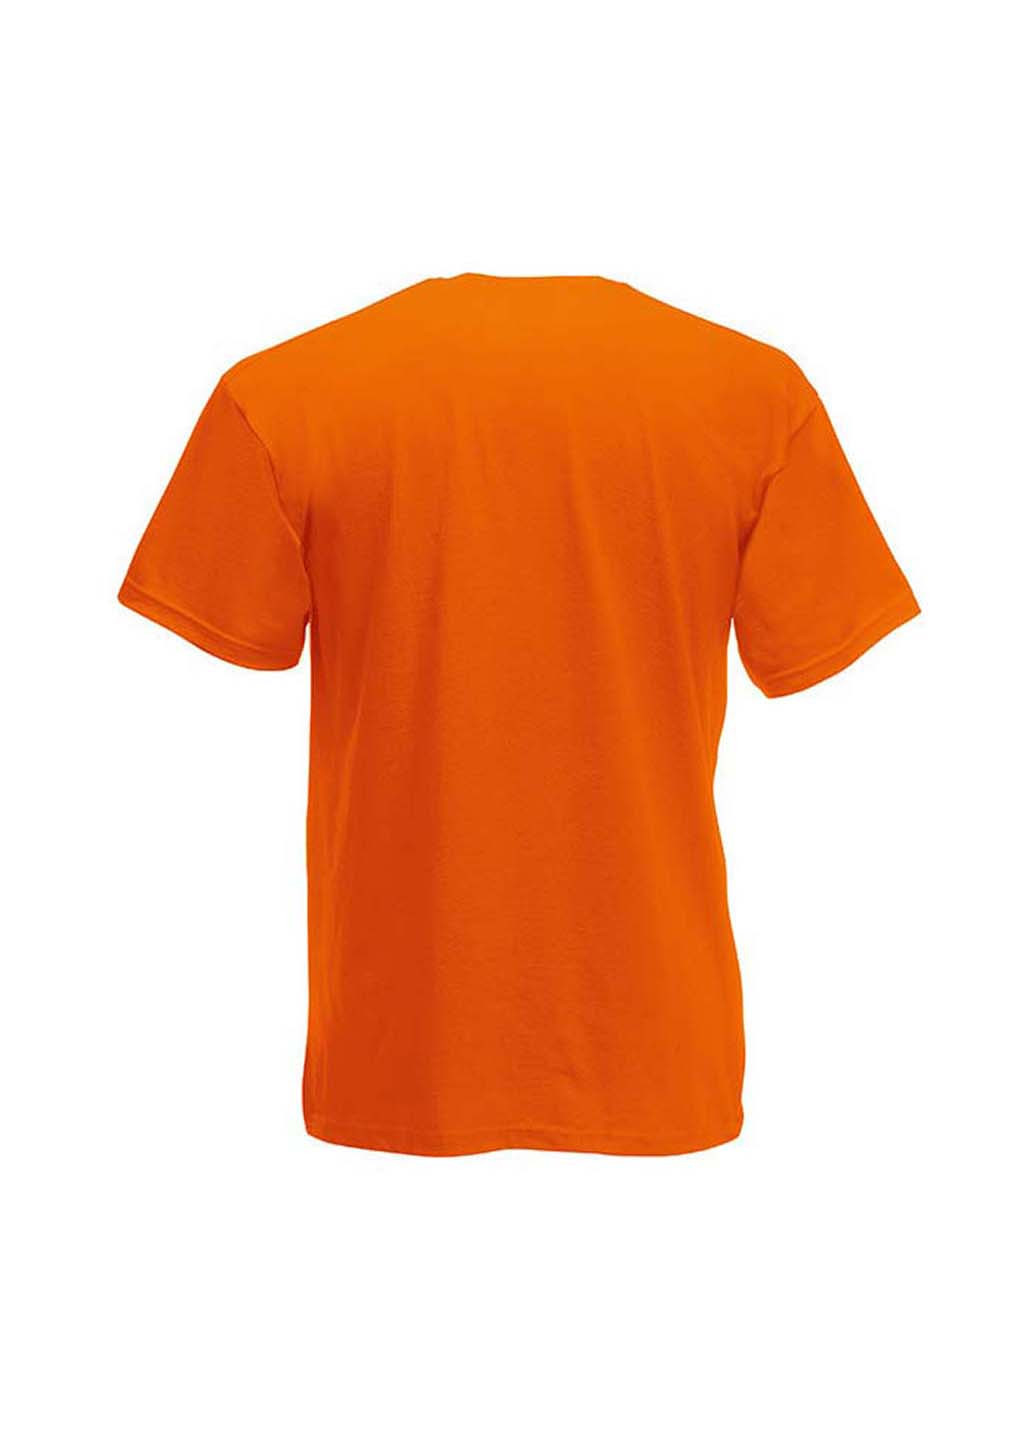 Оранжевая демисезонная футболка Fruit of the Loom D061019044164